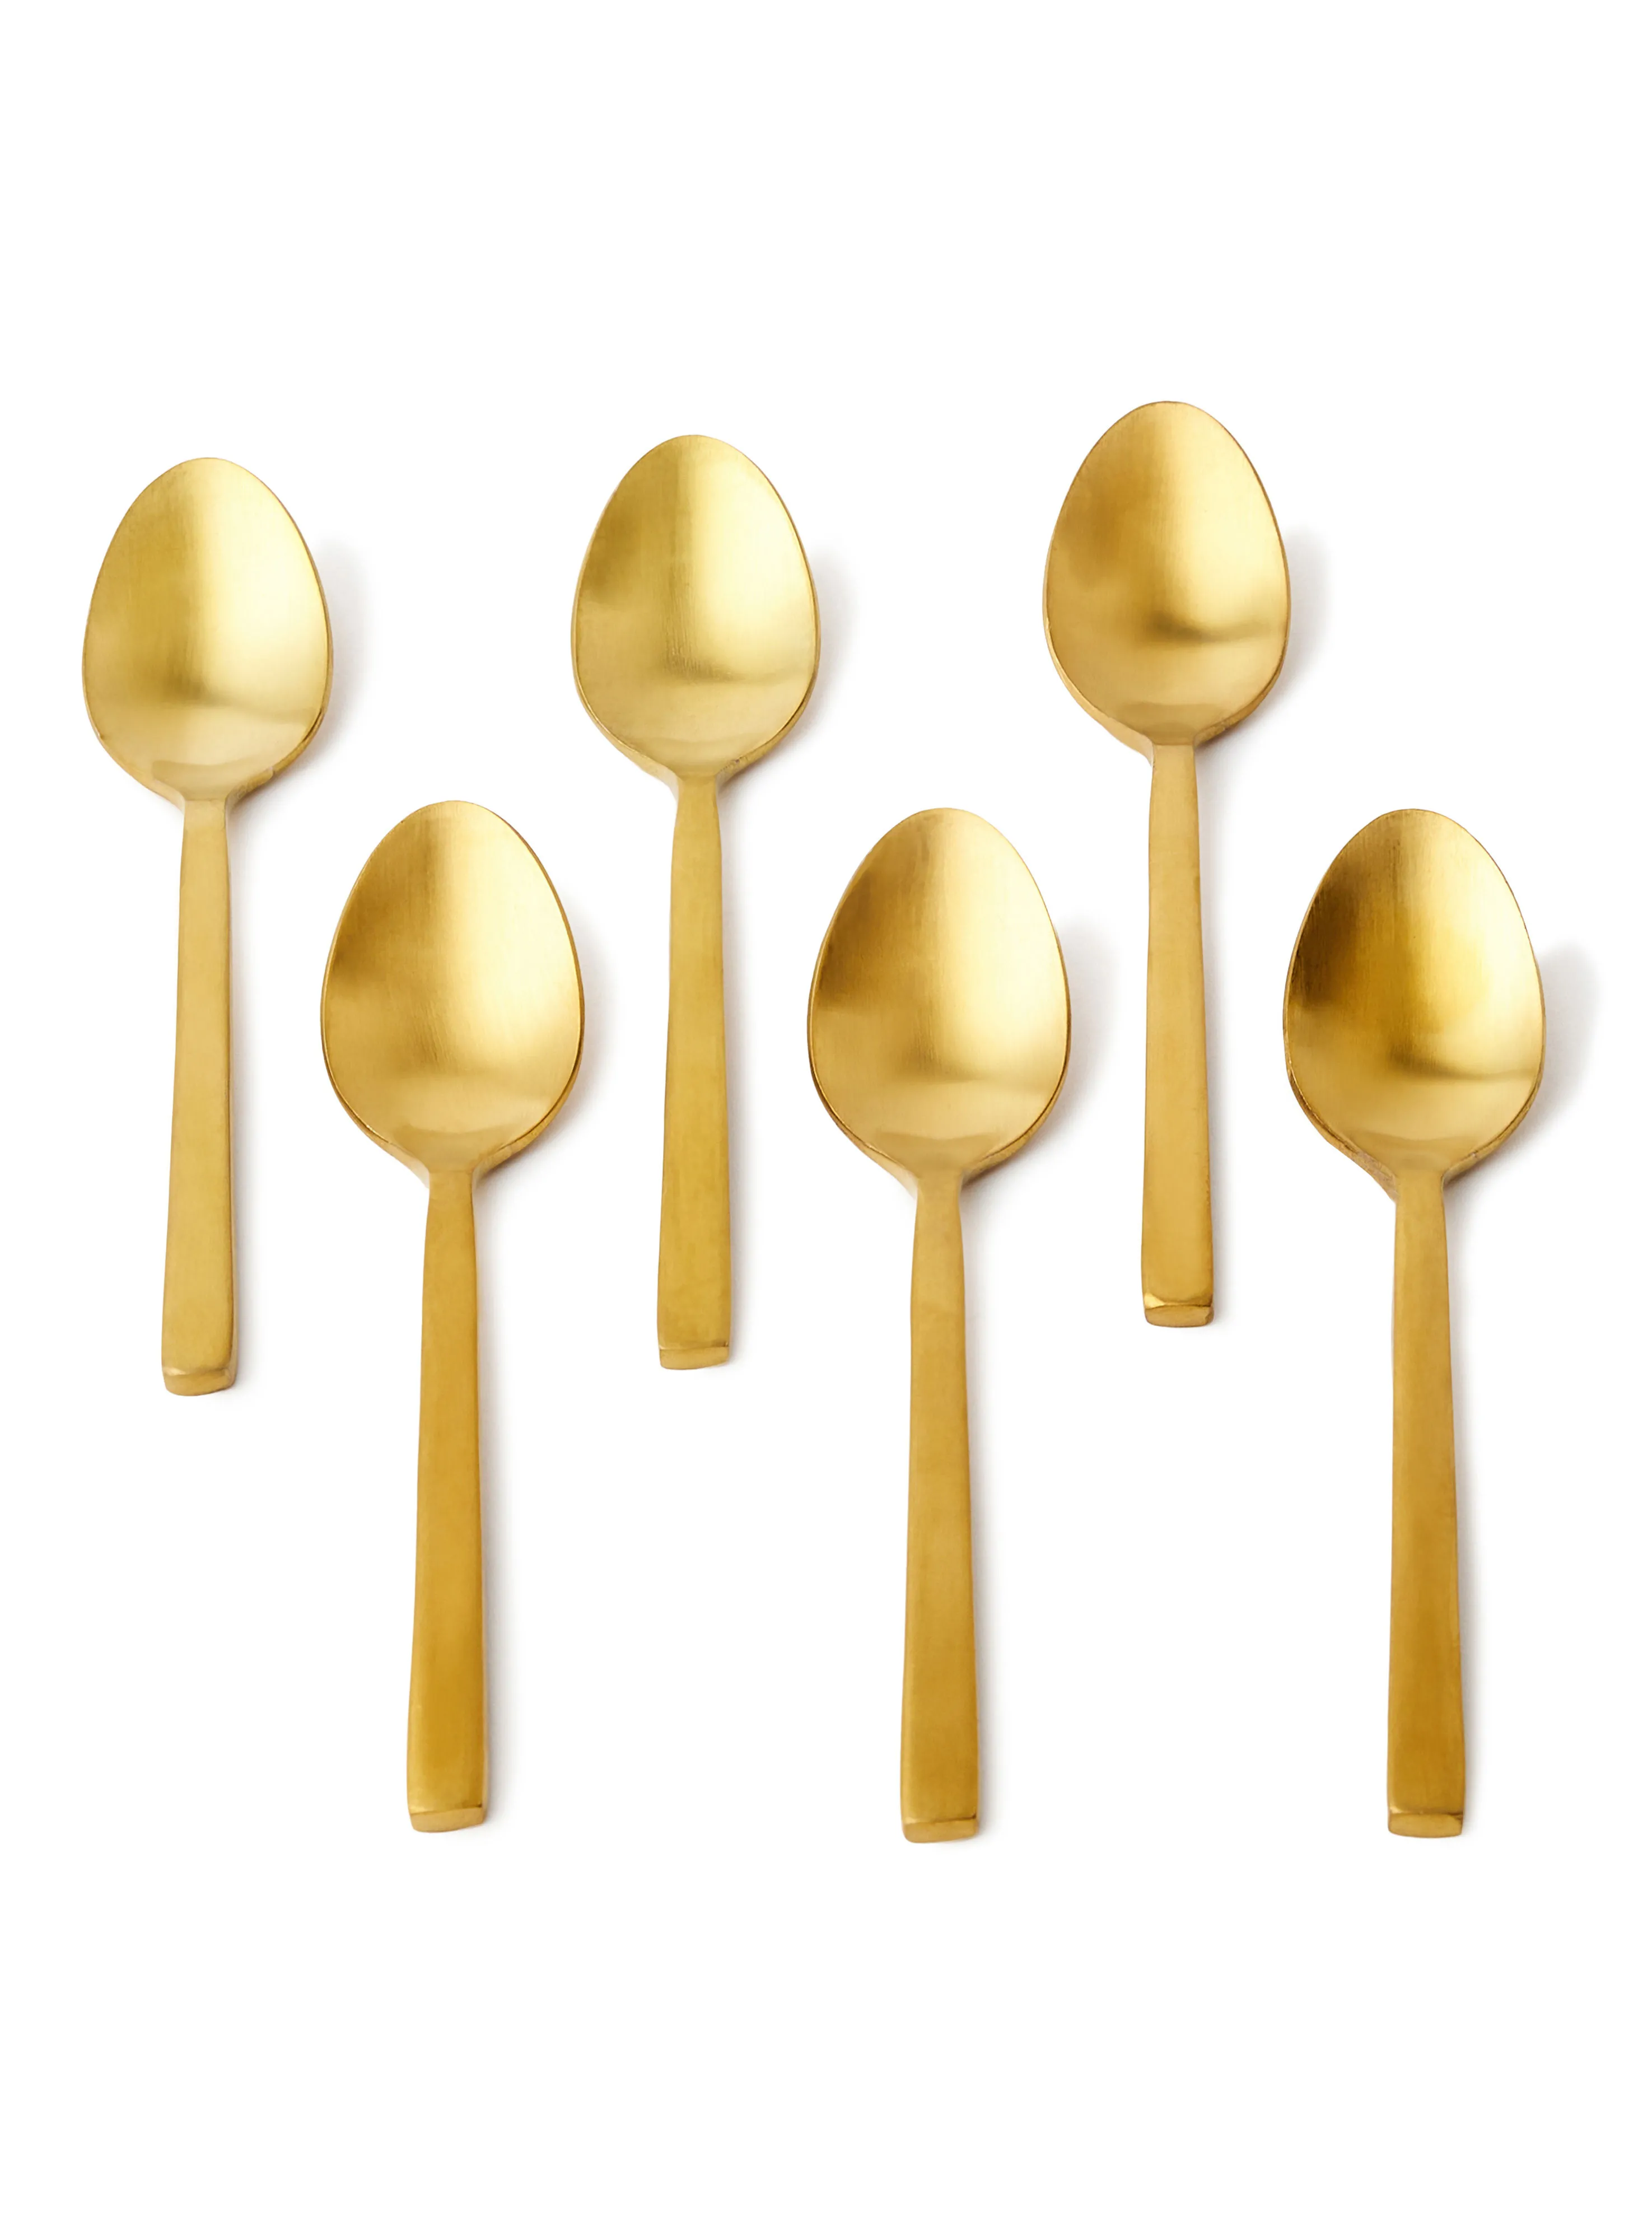 noon east 6 Piece Teaspoons Set - Made Of Stainless Steel - Silverware Flatware - Spoons - Spoon Set - Tea Spoons - Serves 6 - Design Gold Lyra